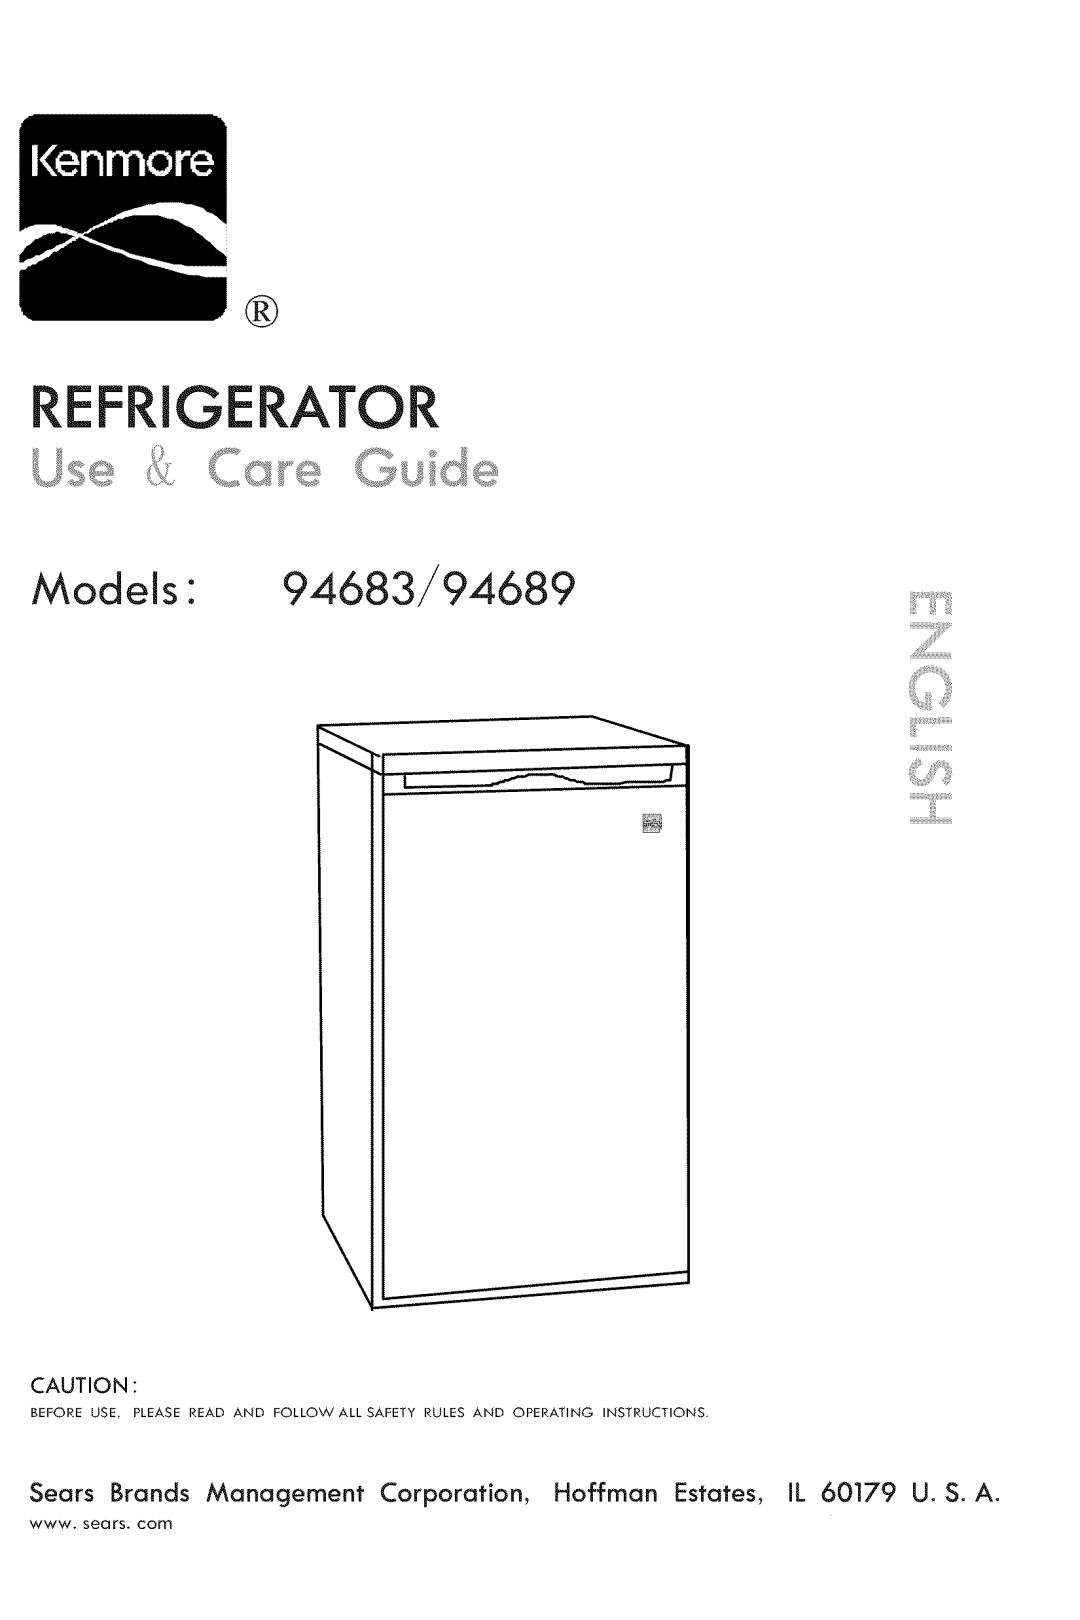 Kenmore manual Refrigerator, Models 94683/94689, iiiiiiiiiiiiiiii!i!¸ 